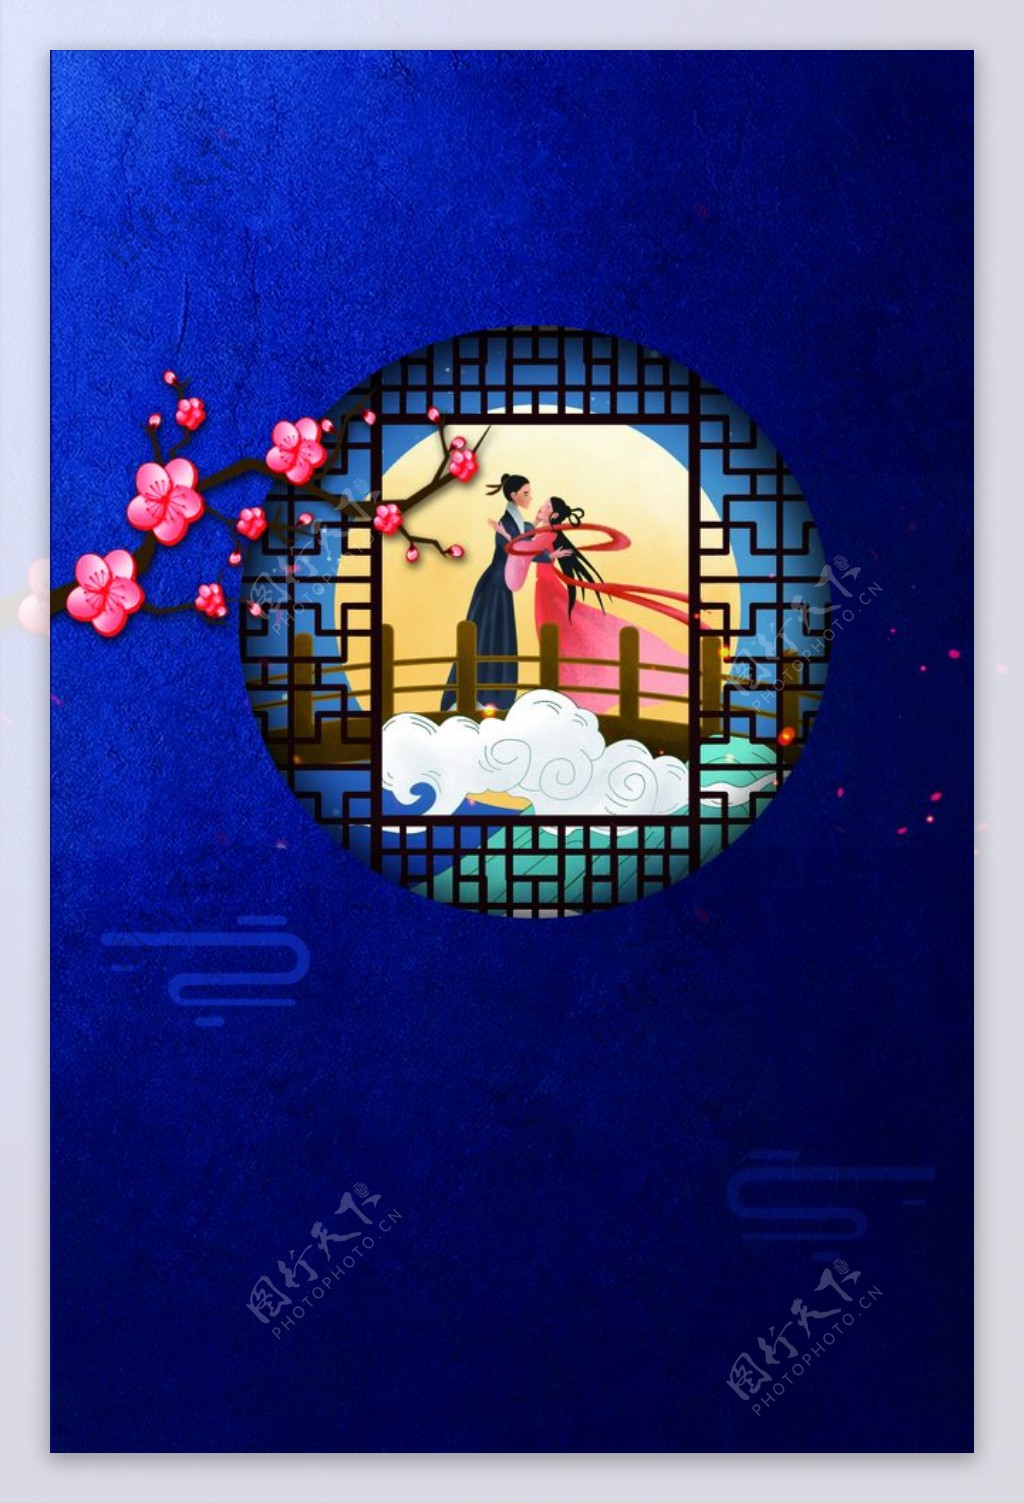 七夕传统节日活动宣传海报背景